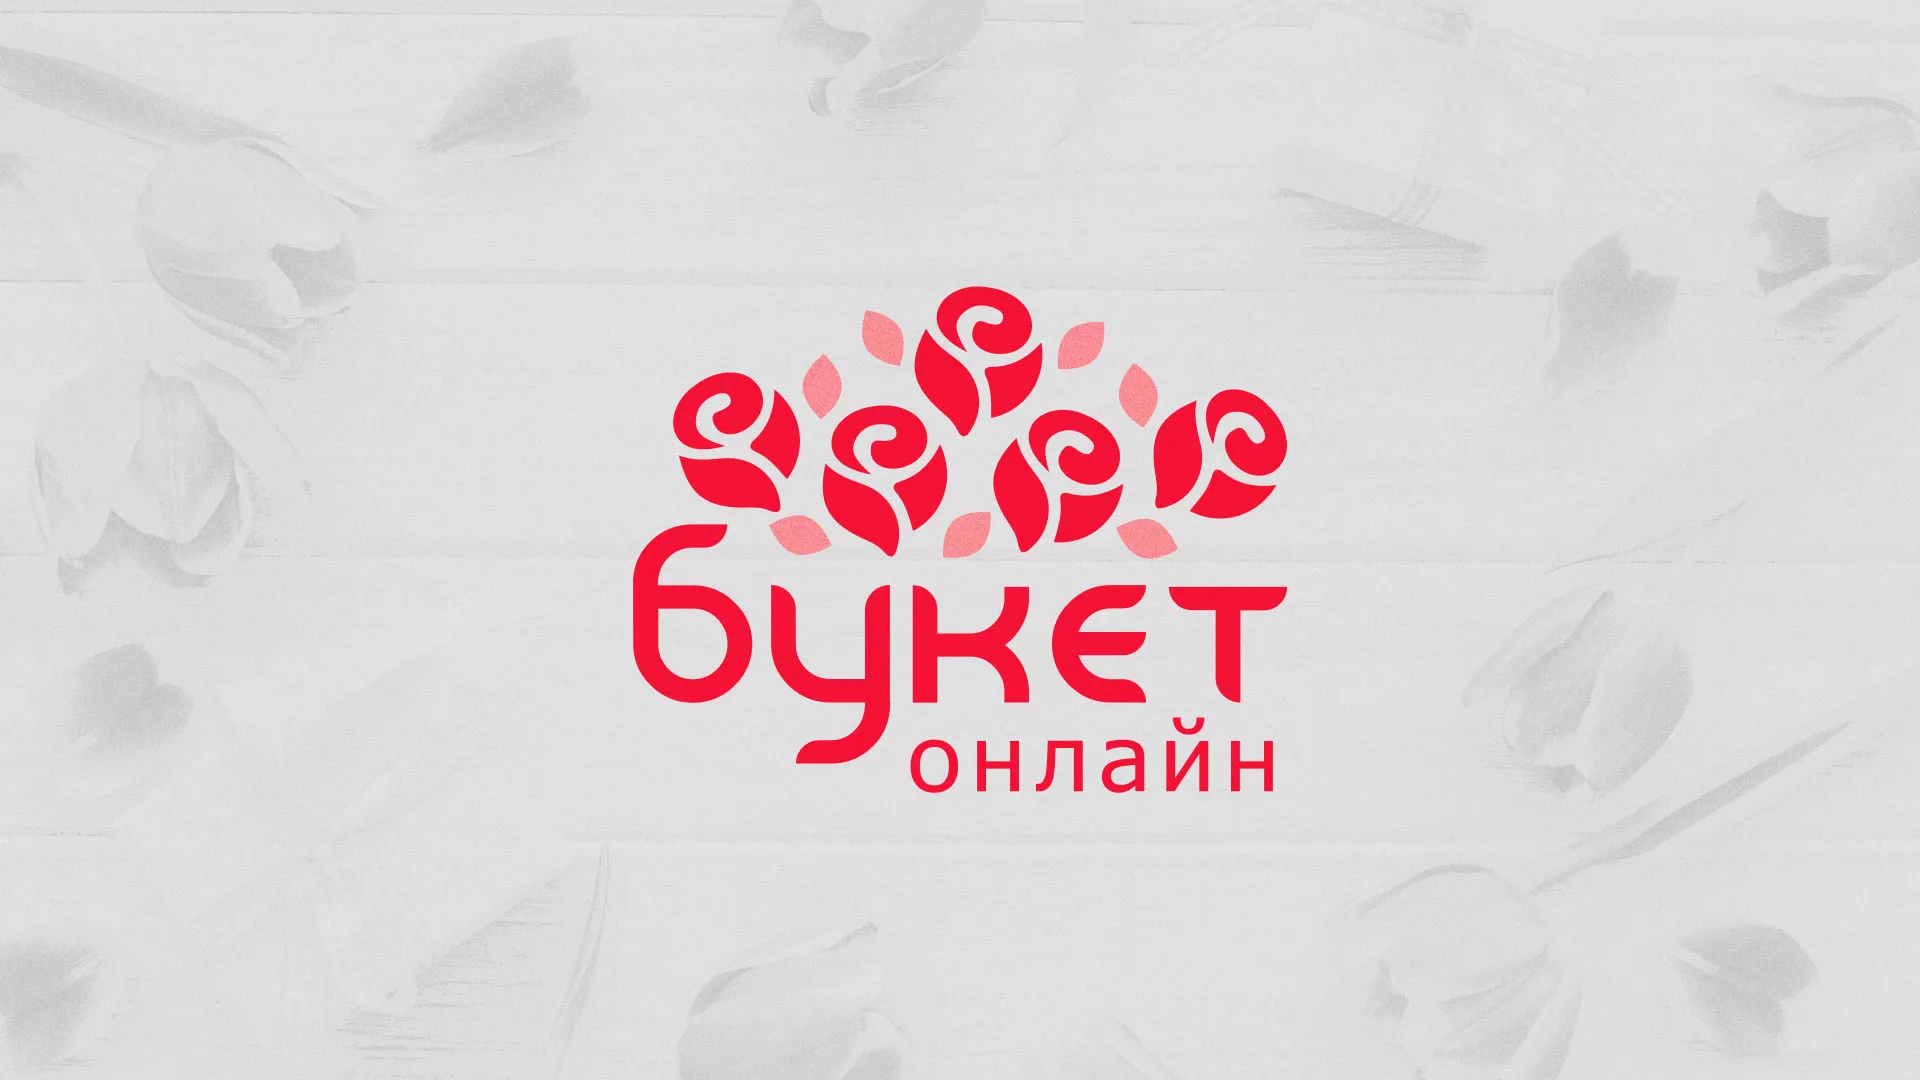 Создание интернет-магазина «Букет-онлайн» по цветам в Моздоке